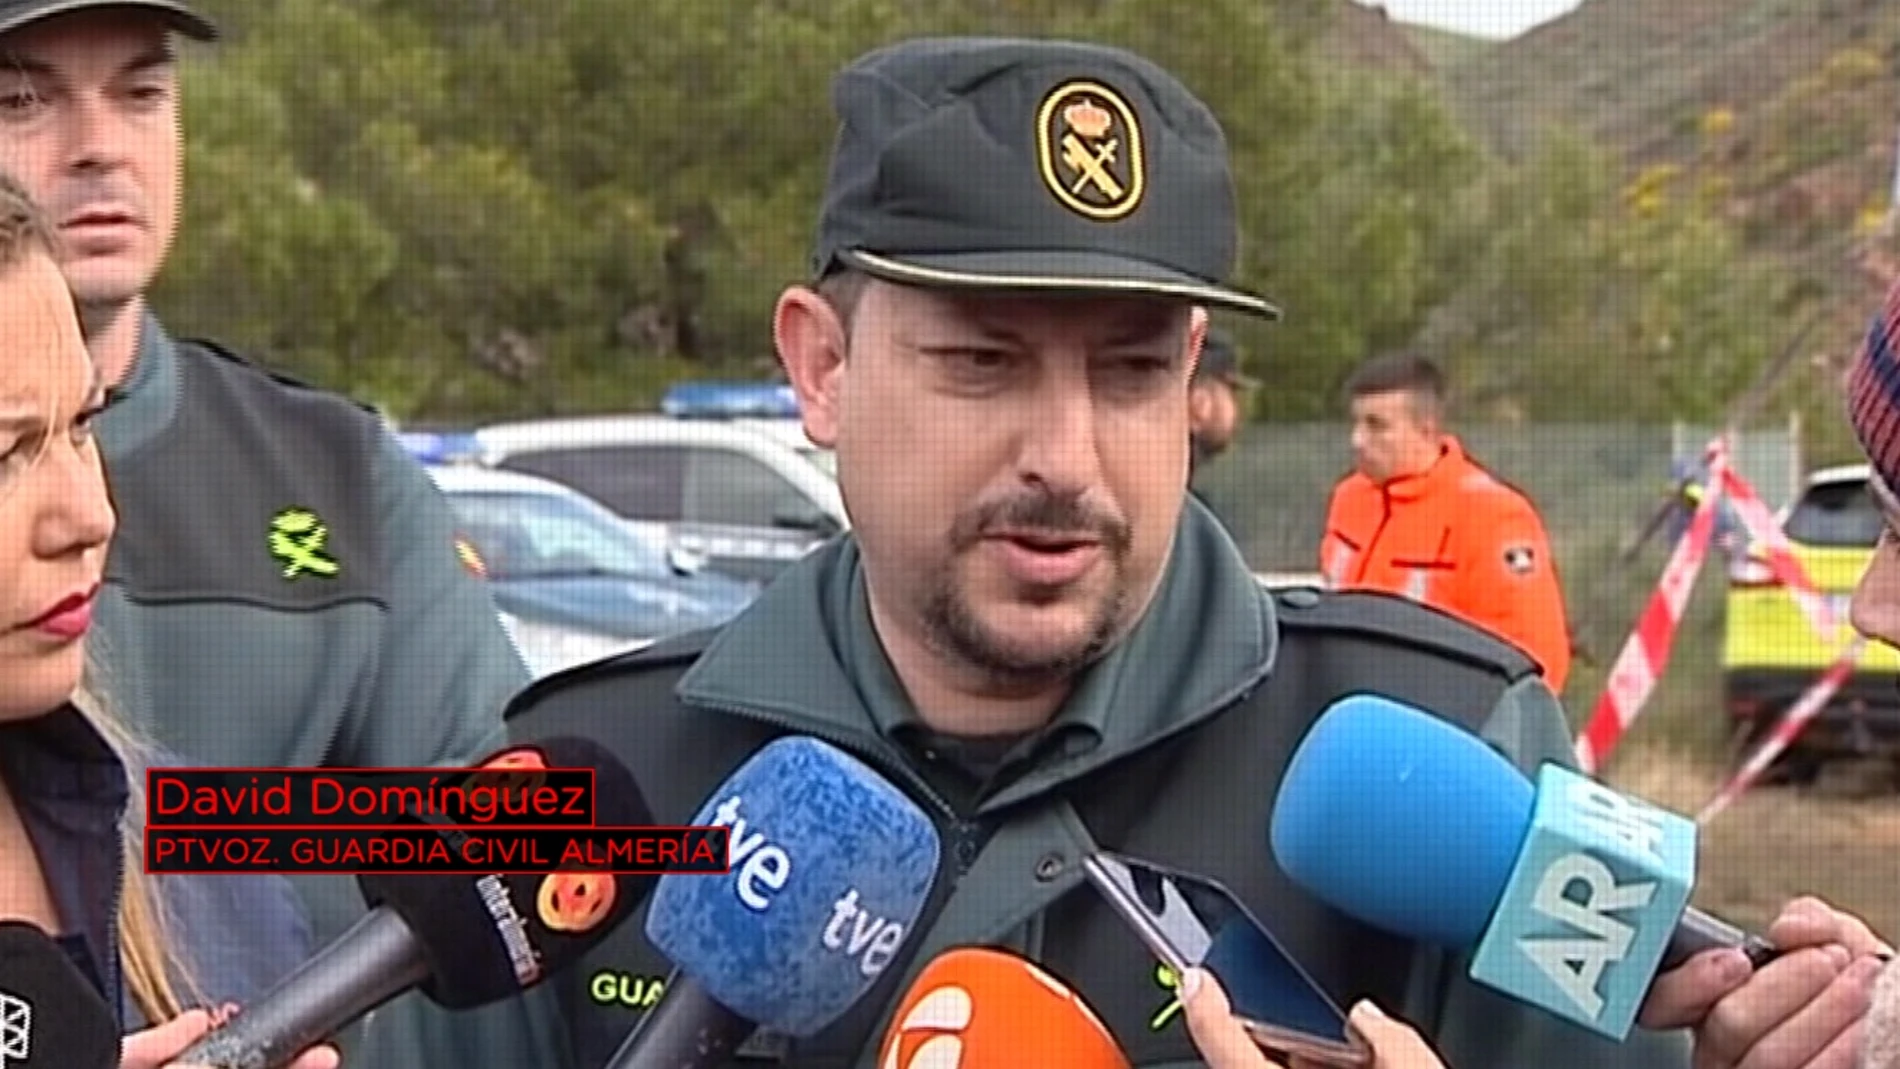 David Domínguez, portavoz de la Guardia Civil en Almería